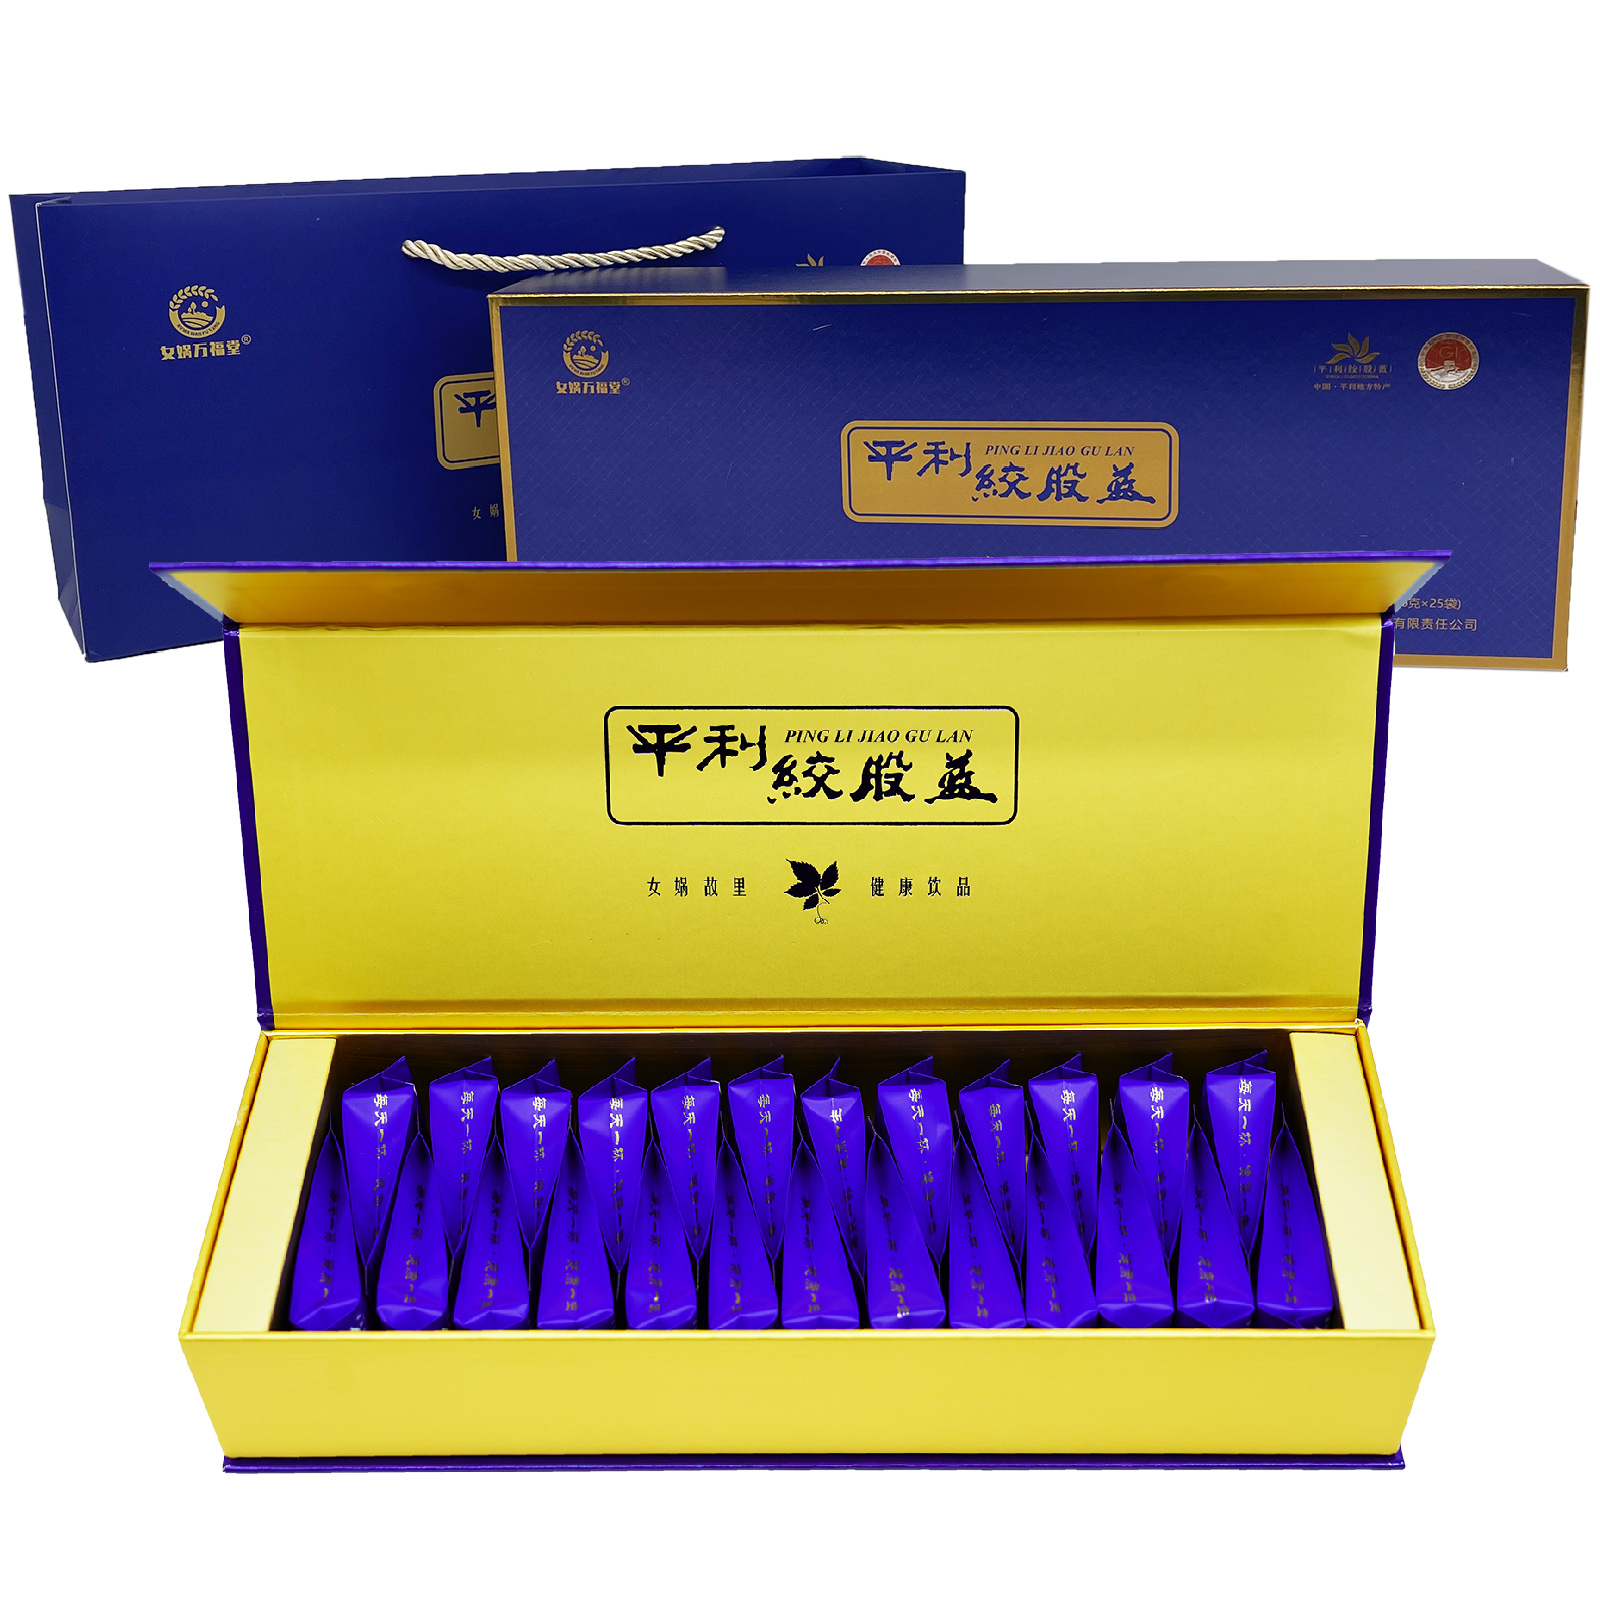 【特价礼盒装】平利绞股蓝龙须茶野生五叶七叶特正品级6克×25袋